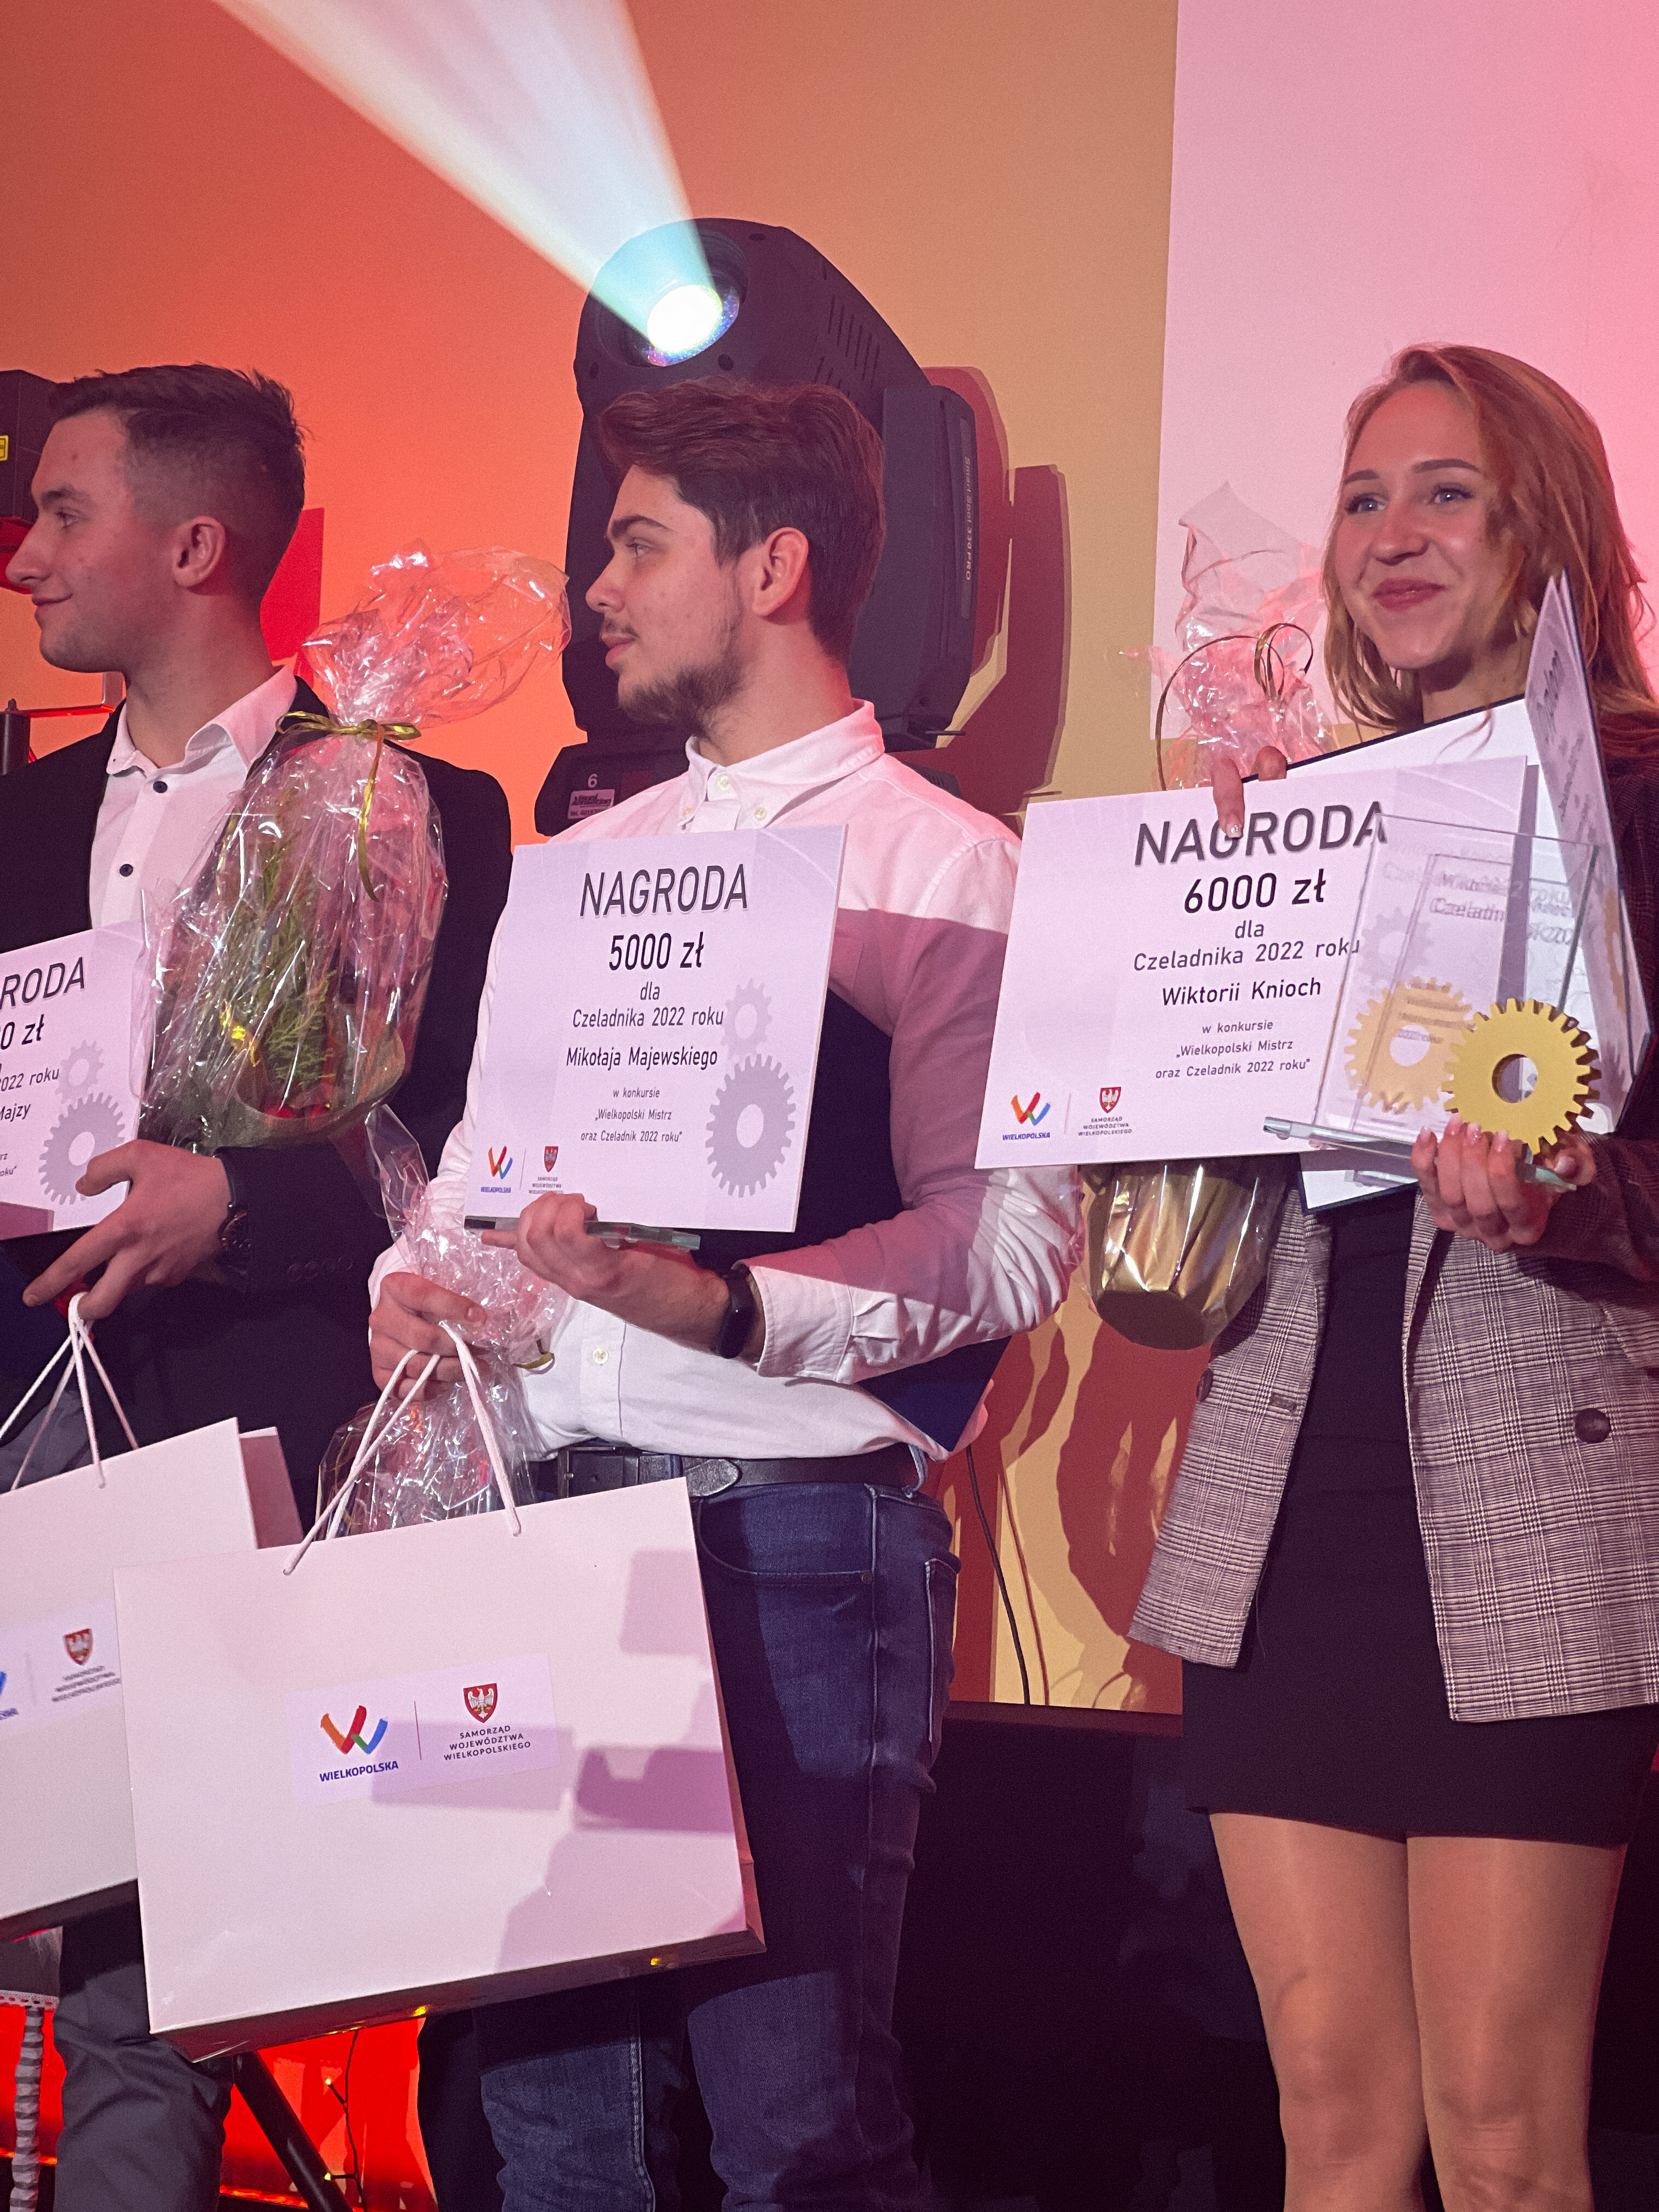 Na zdjęciu widać 3 młode osoby - zwycięzców w kategorii Wielkopolski Czeladnik 2022 roku.